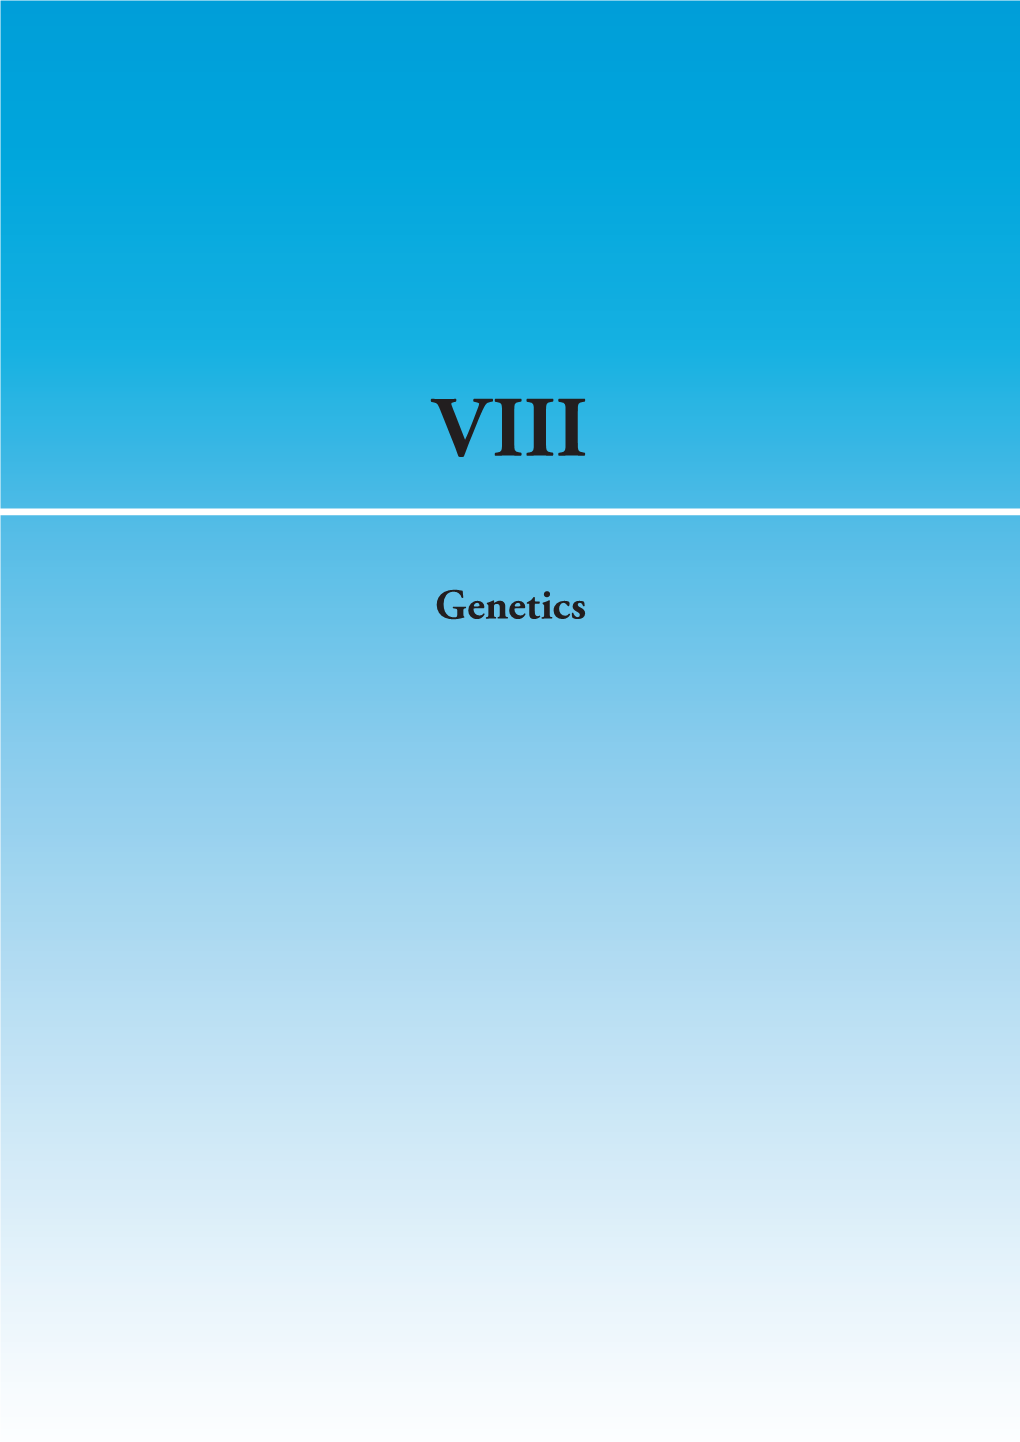 Genetics CQ VIII-1